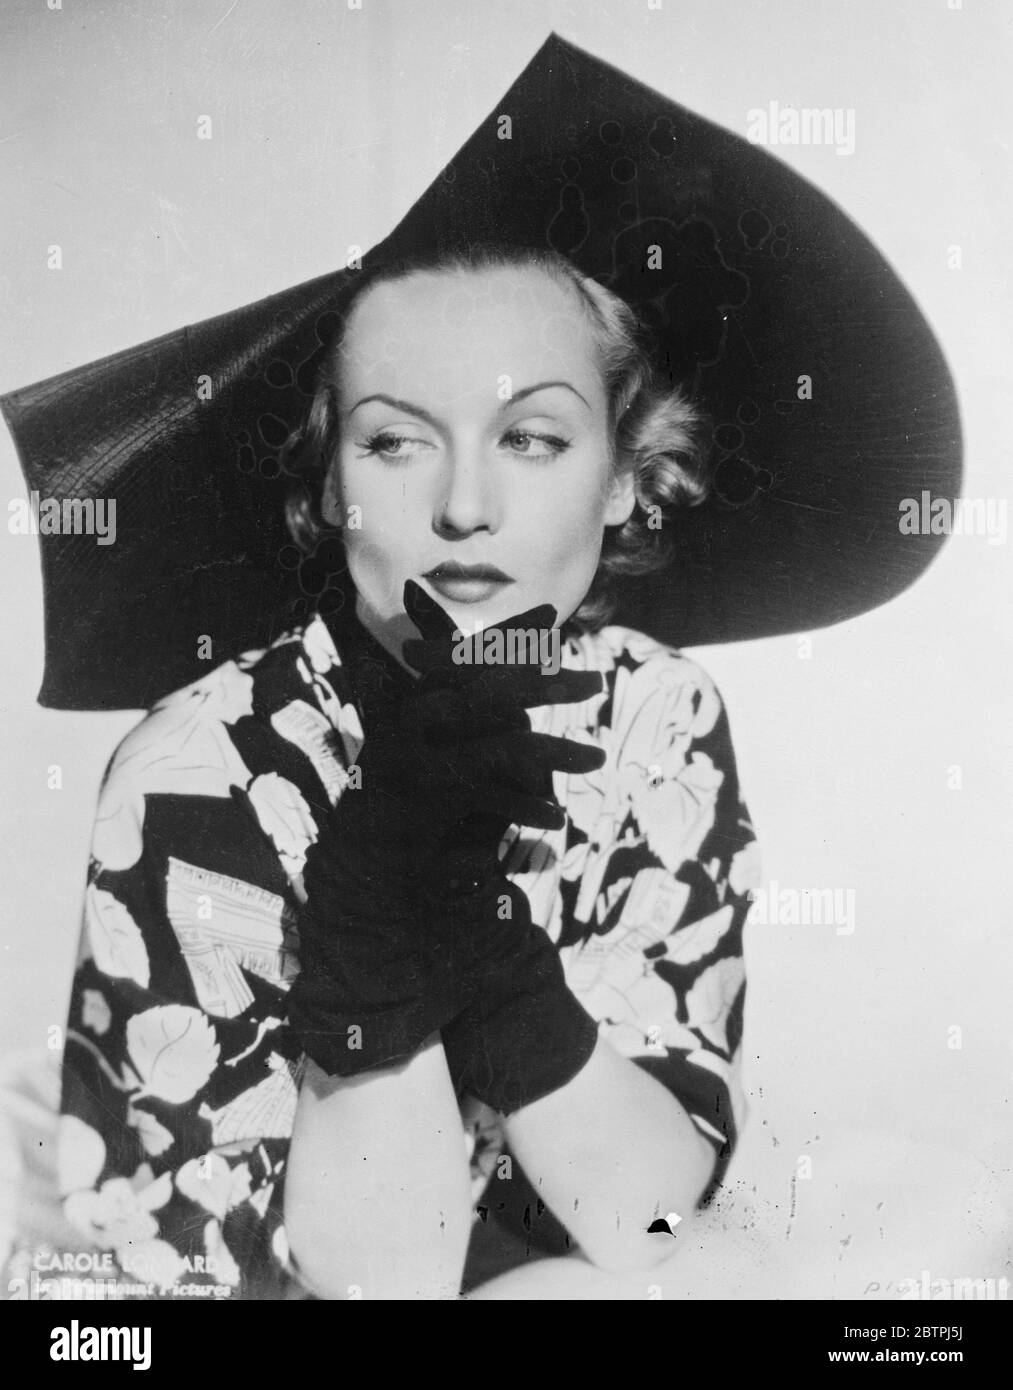 Scalloped Fräskelei . Carole Lombard, die Hollywood-Filmschauspielerin, trägt einen neuen Hut eines der Merkmale, von denen der Schnitt des Krempes ist. 29. September 1934 Stockfoto